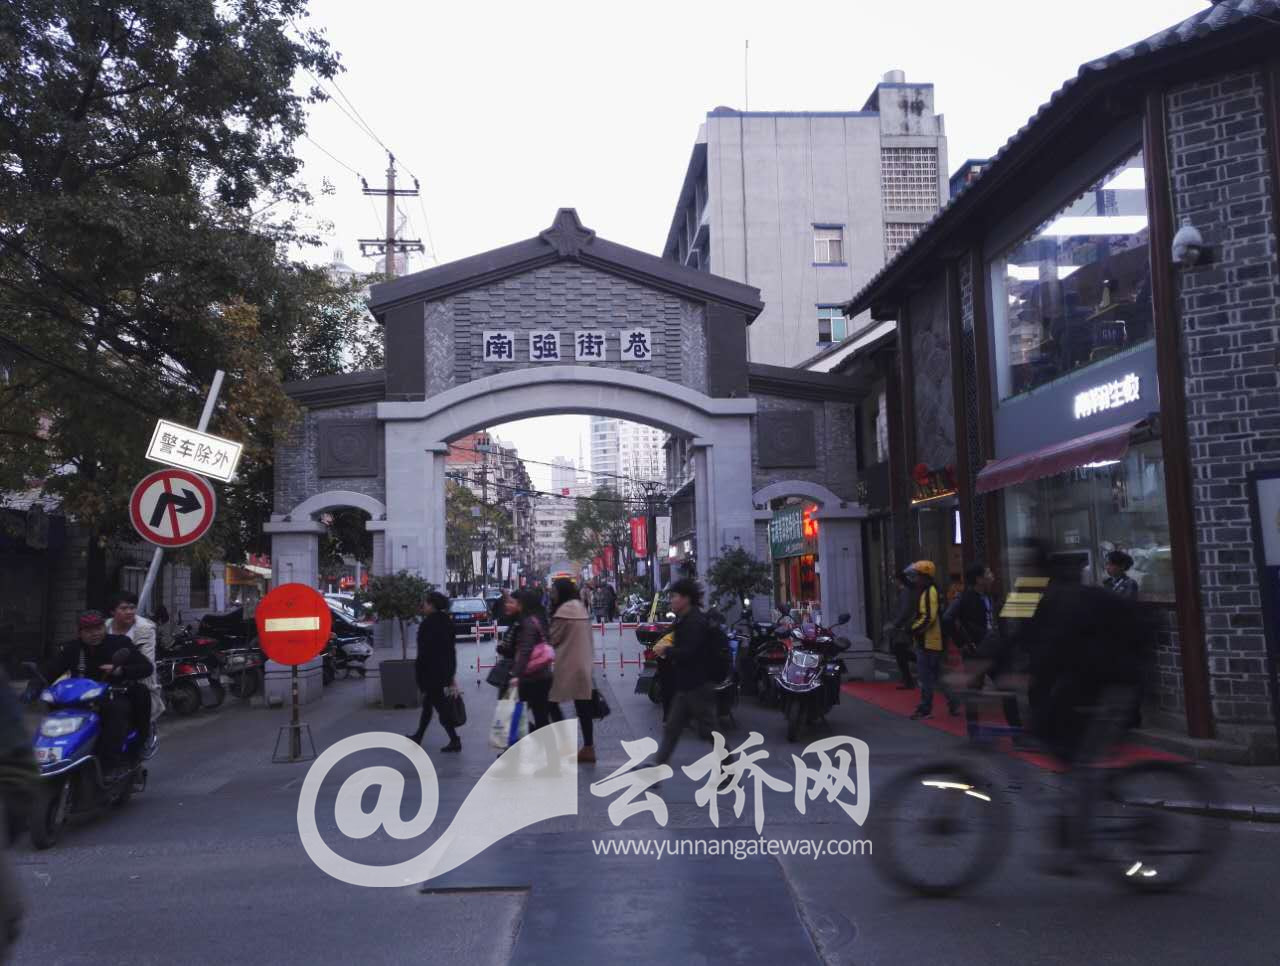 สิ่งประทับใจที่สองของเมืองคุนหมิง——ถนนหนานเฉียง